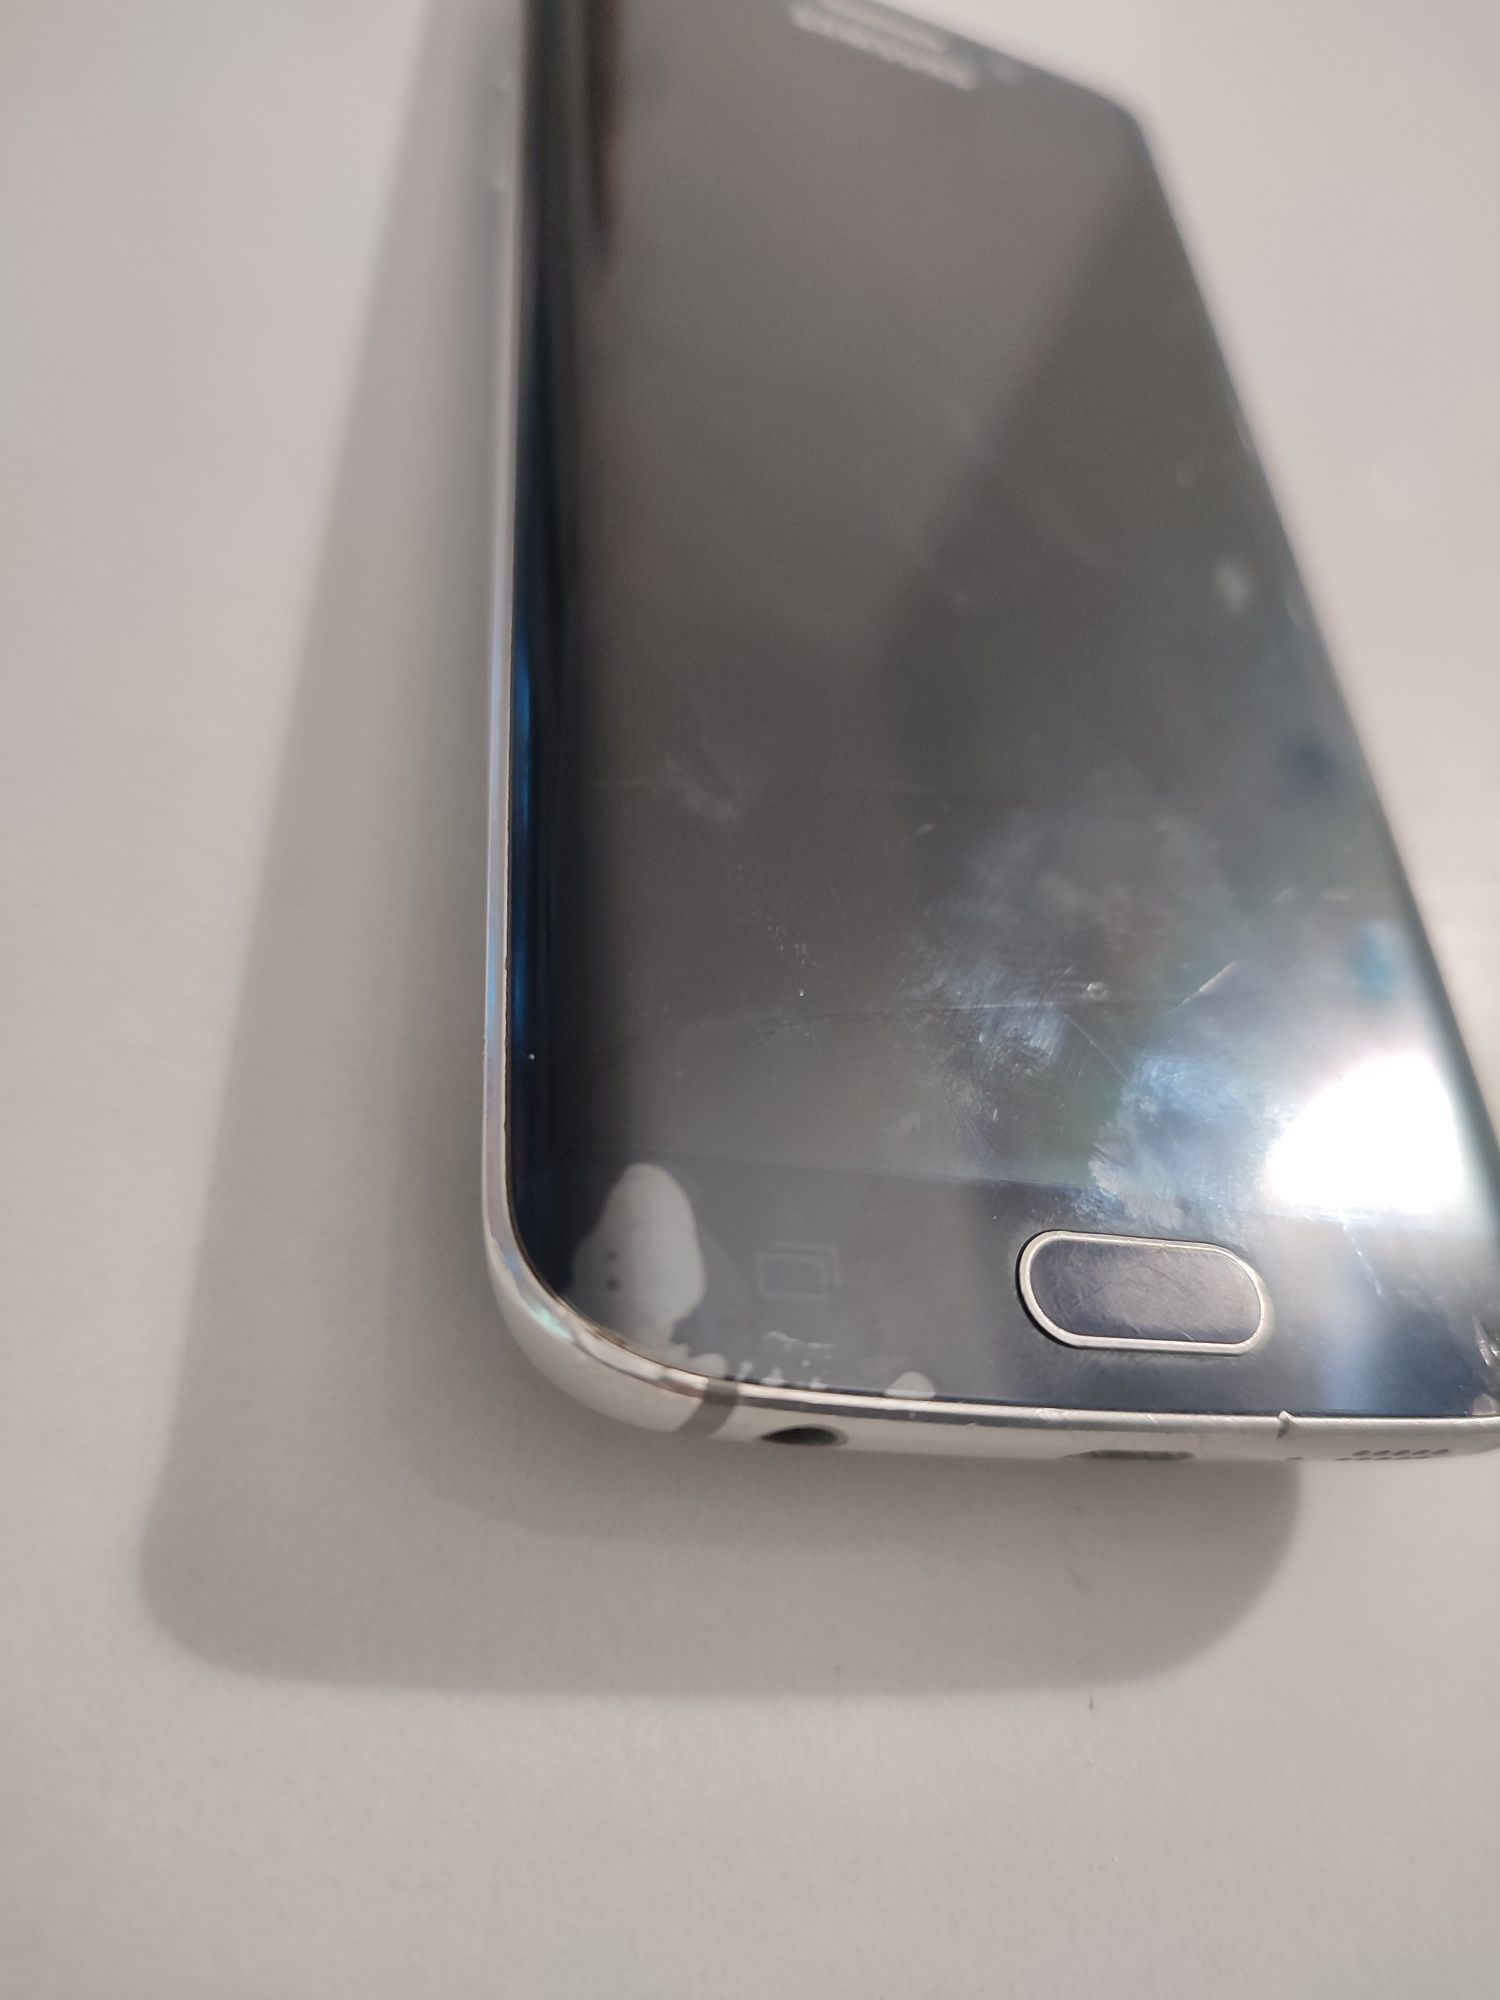 Samsung Galaxy S6 Edge 32GB sprawny, 1 własciciel